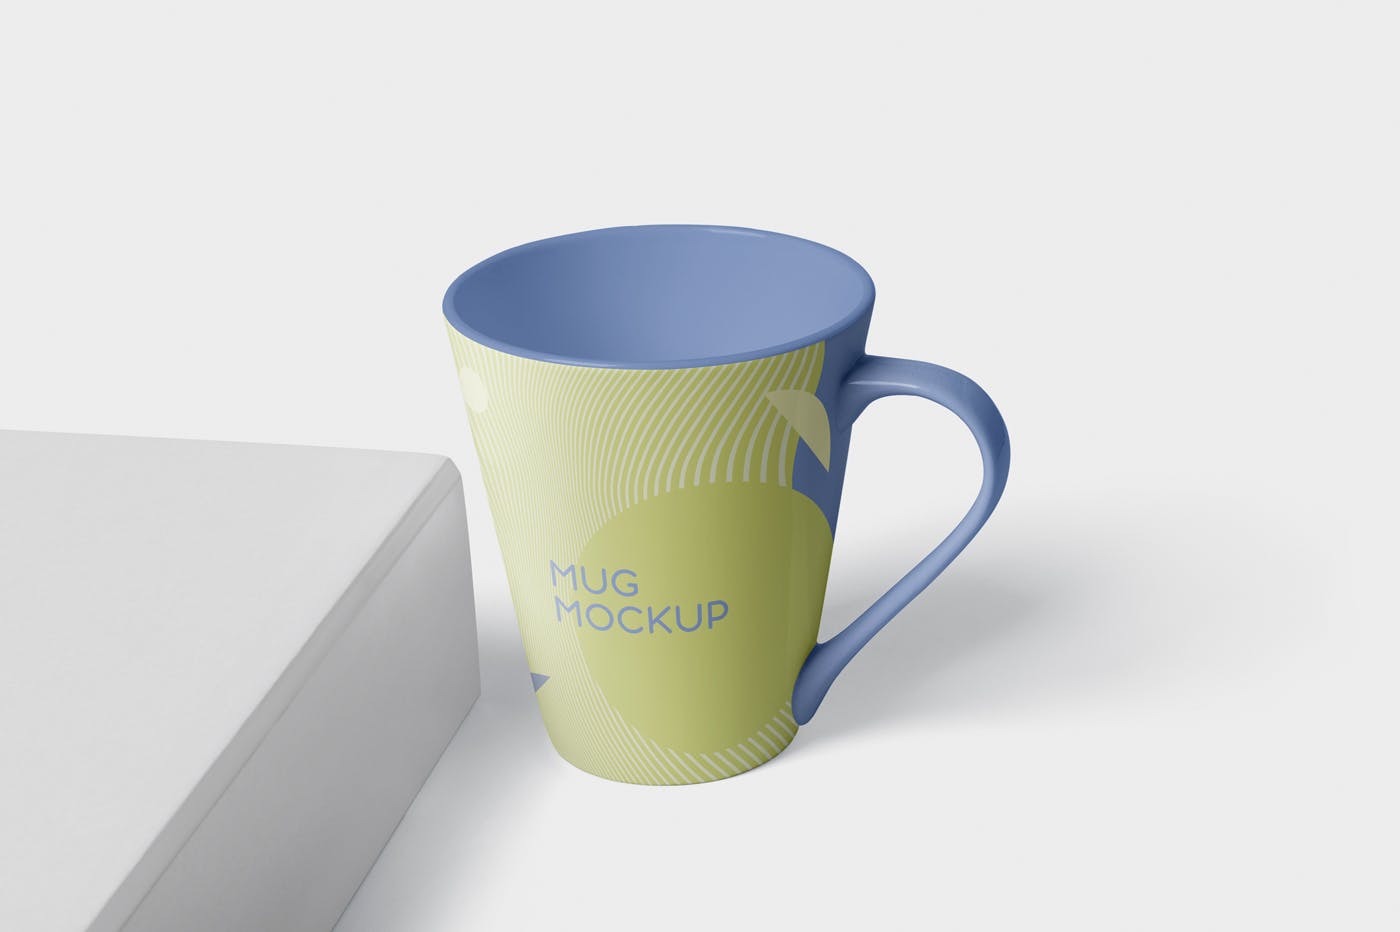 锥形马克杯图案设计蚂蚁素材精选 Mug Mockup – Cone Shaped插图(3)